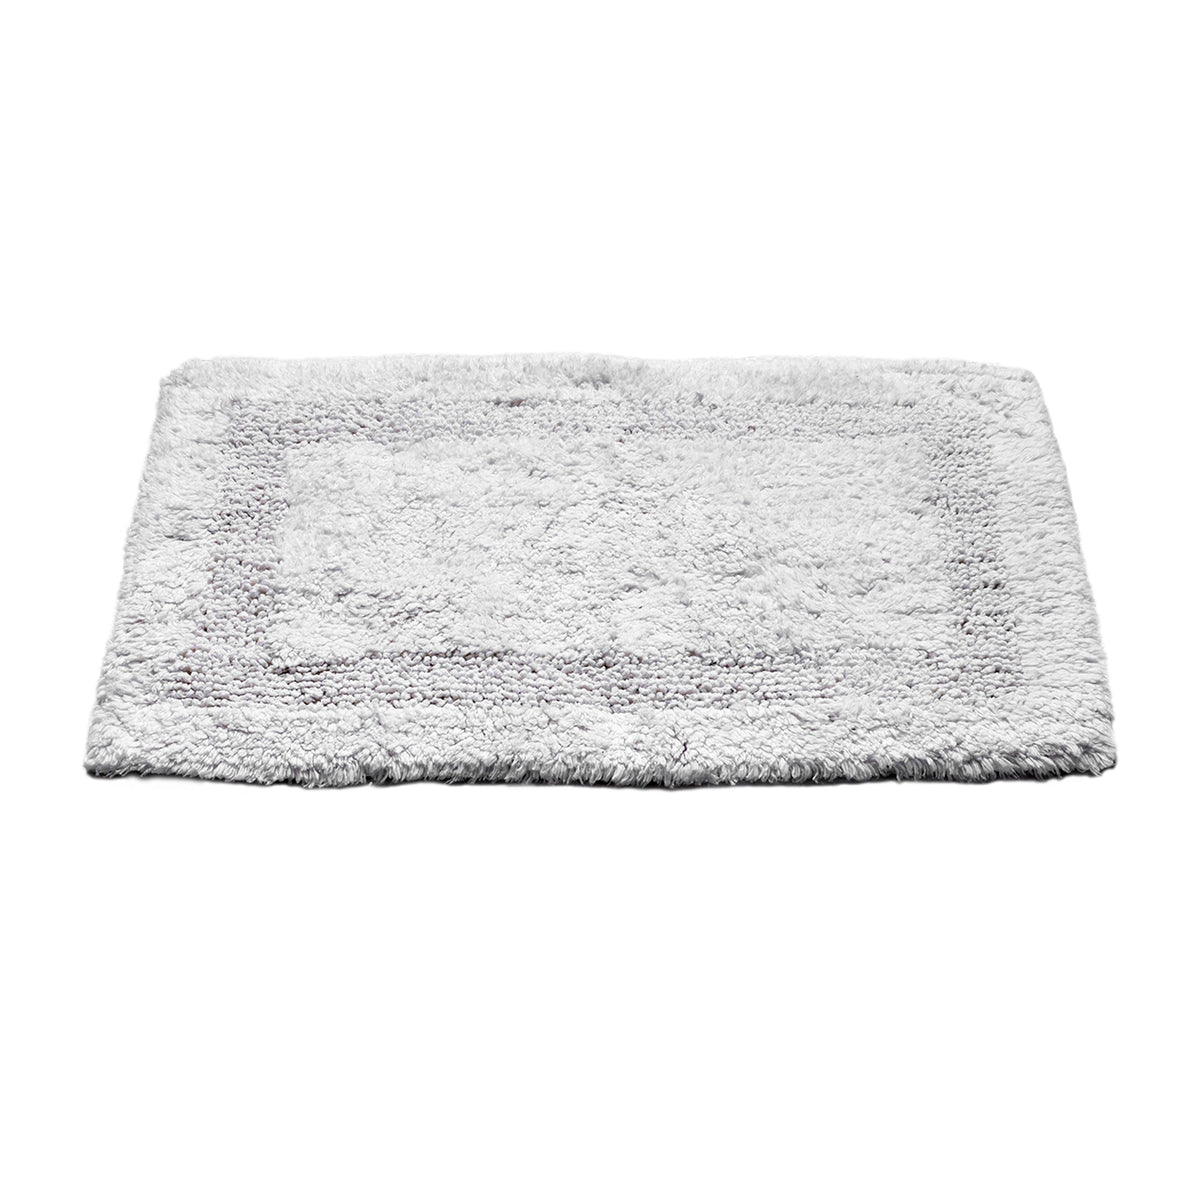 OnlyMat Cotton Quickdry Bath Mat White Colour (40x60cmx8mm)